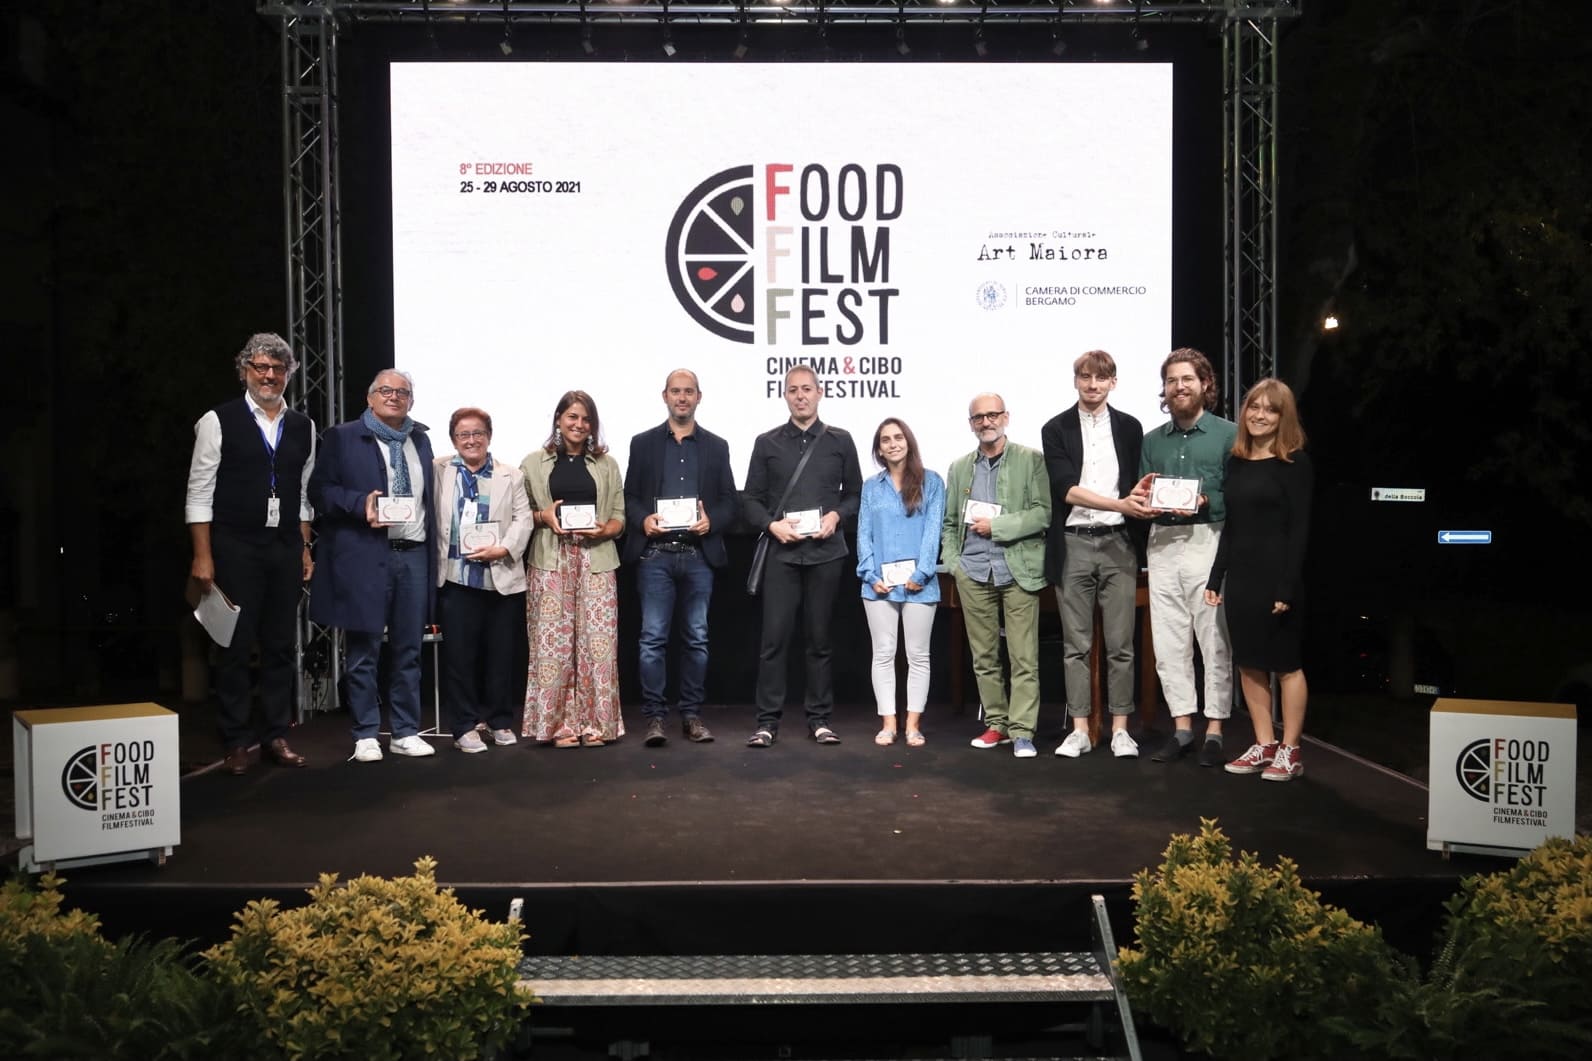 Food Film Fest 2021